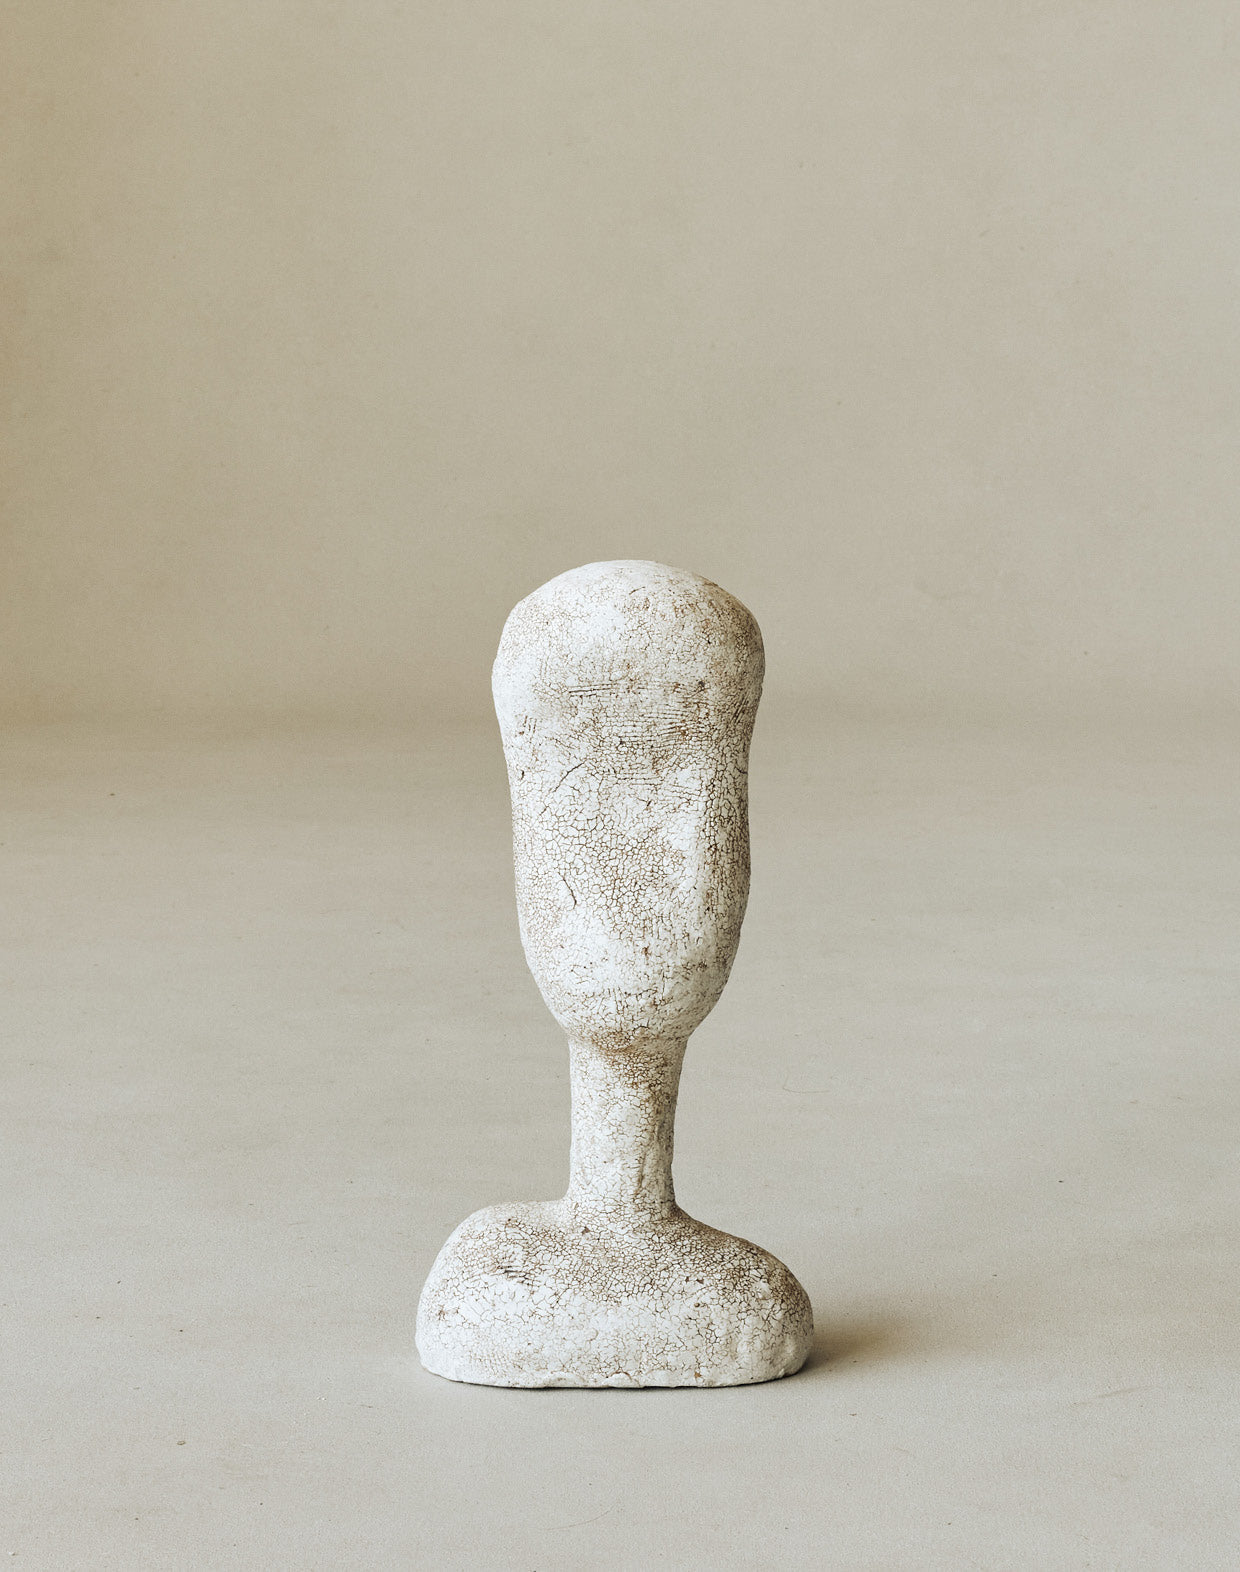 Maggie Wells, Ceramic Sculpture with Terra Sigillata Glaze No. 02